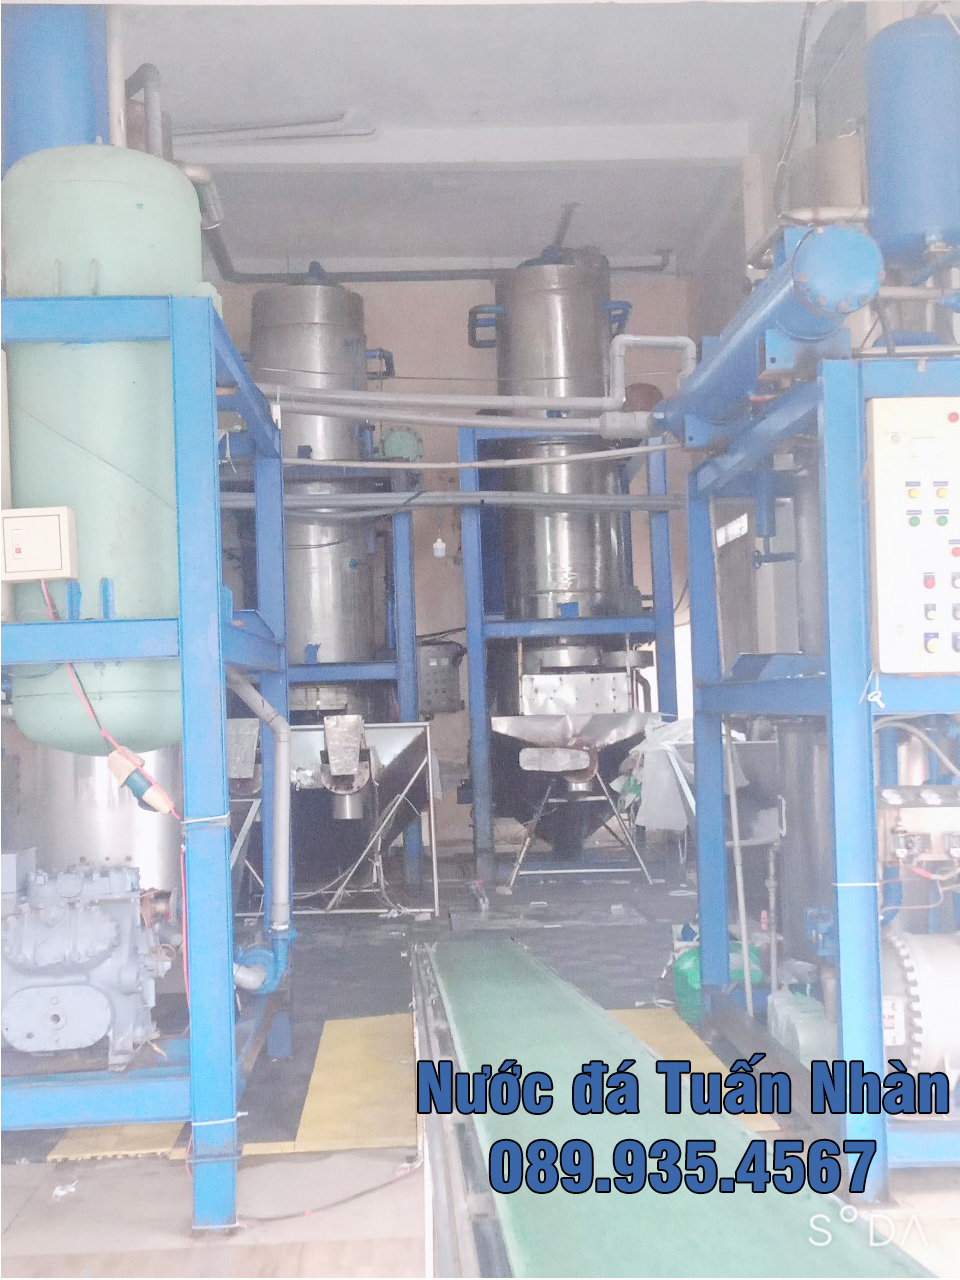 Máy móc, xưởng sản xuất - Nước Đá Tinh Khiết Tuấn Nhàn - Công Ty TNHH Dịch Vụ Vận Tải Và TM Tuấn Nhàn